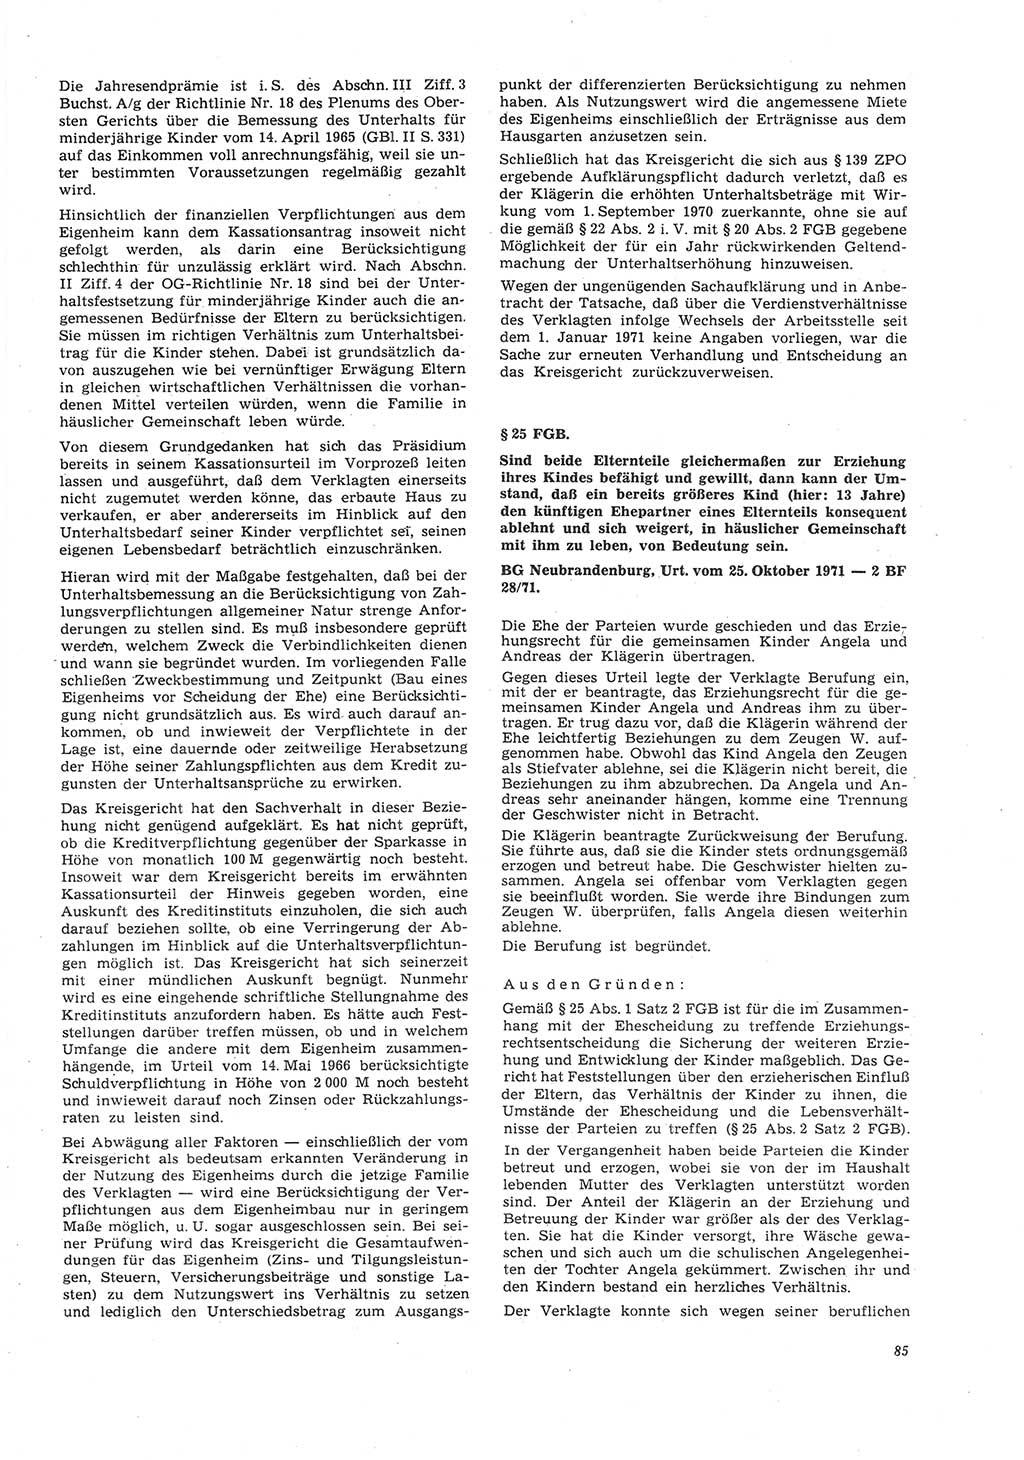 Neue Justiz (NJ), Zeitschrift für Recht und Rechtswissenschaft [Deutsche Demokratische Republik (DDR)], 26. Jahrgang 1972, Seite 85 (NJ DDR 1972, S. 85)